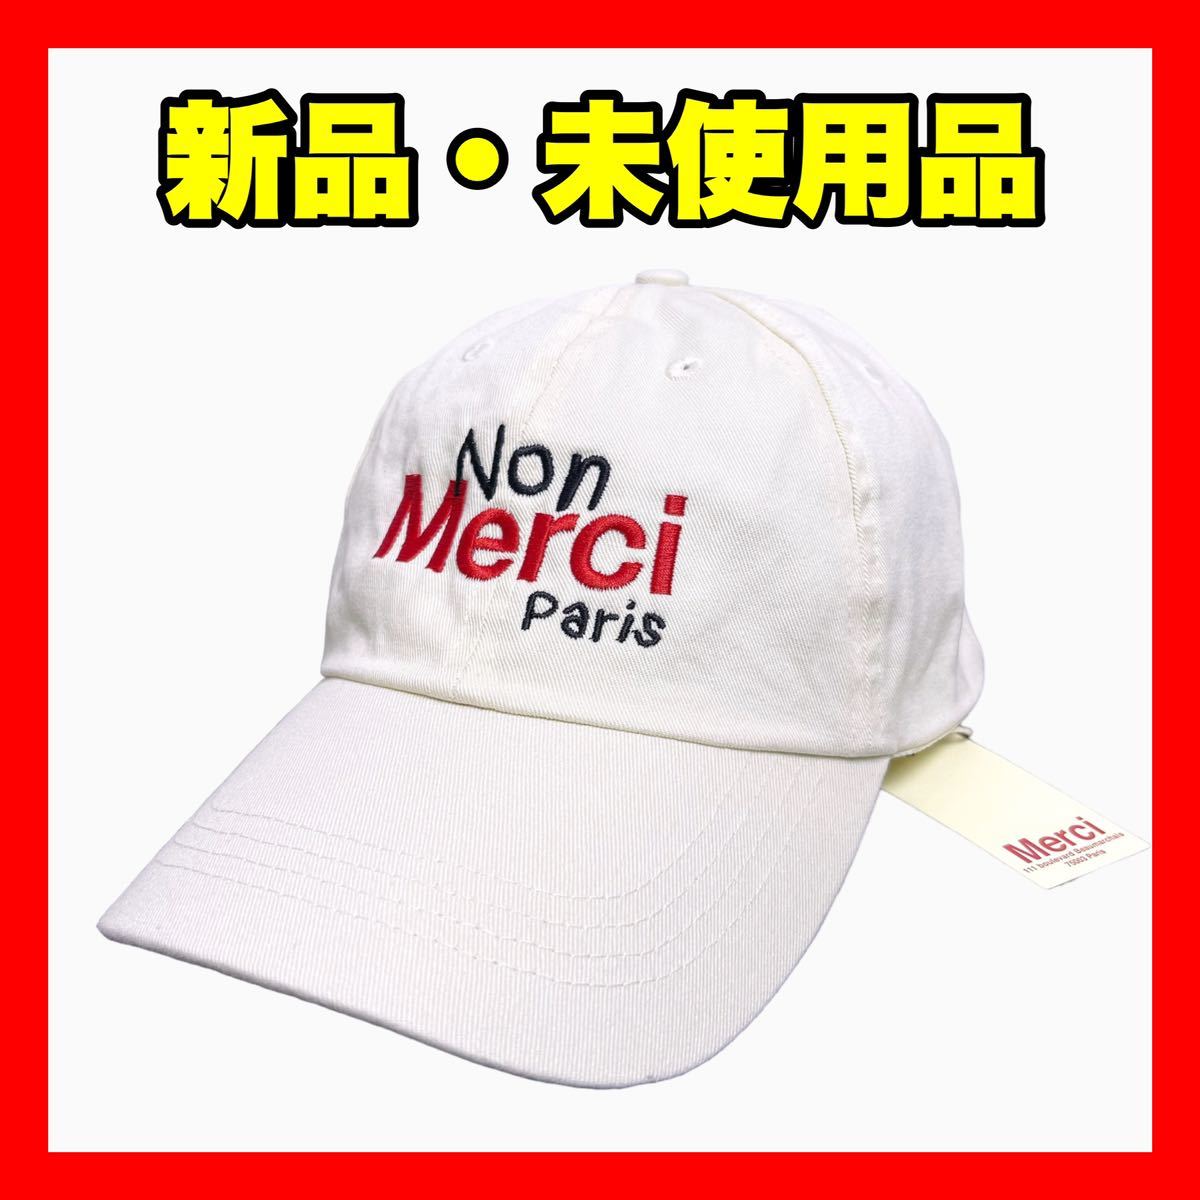 新品【merci】ノン メルシー パリ POP UP 限定 ロゴ 刺繍 キャップ エクリュ【正規品】Non Merci Paris CAP フリーサイズ トートバッグ